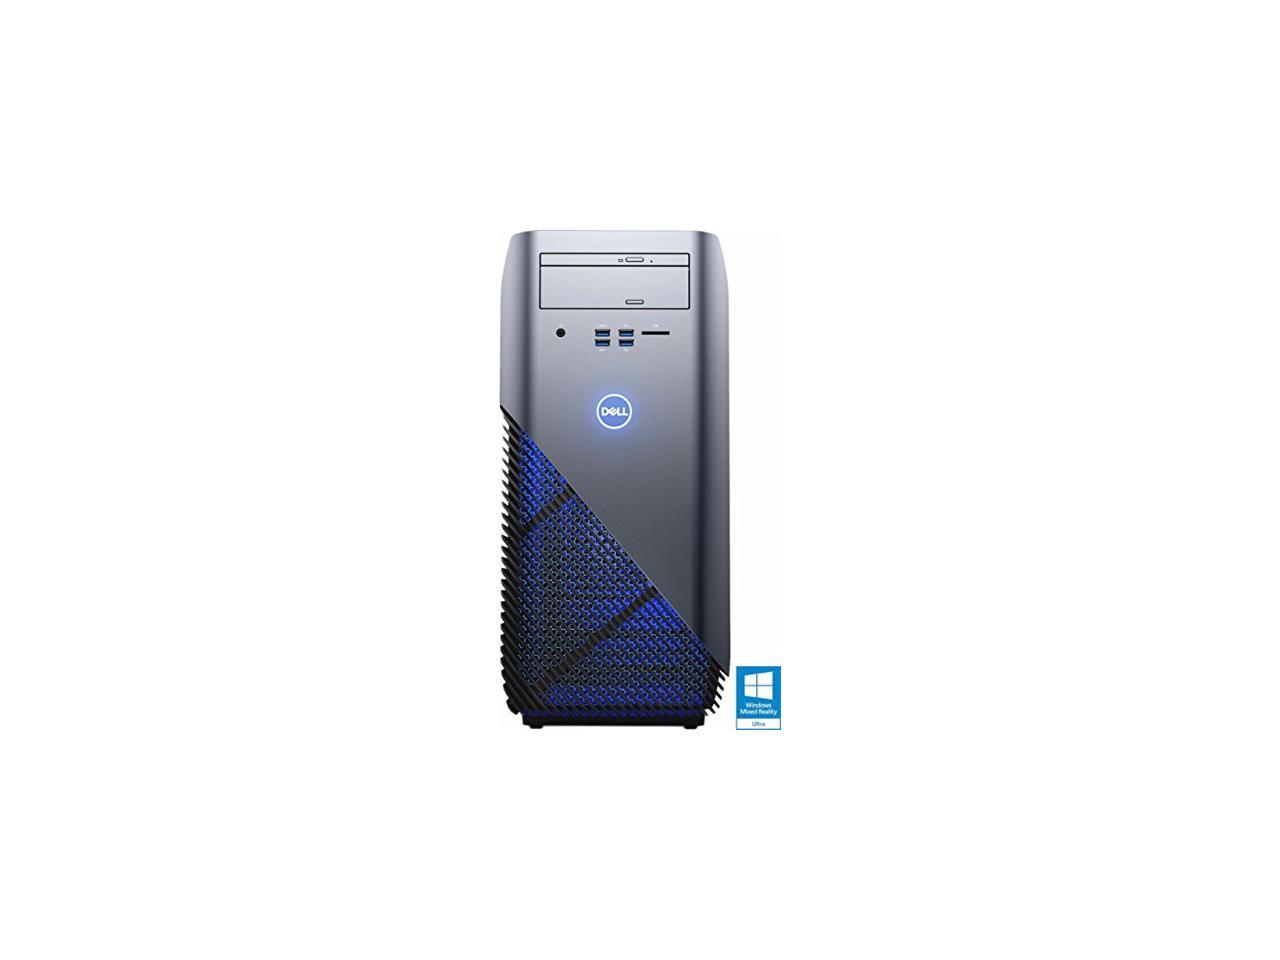 Newest Dell Inspiron 5000 Flagship High Performance Gaming Desktop | AMD Ryzen 5 1400 Quad-Core | AMD Radeon RX 570 | 8GB RAM | 1TB HDD | DVD +/-RW | Windows 10 | USB Keyboard&Mouse